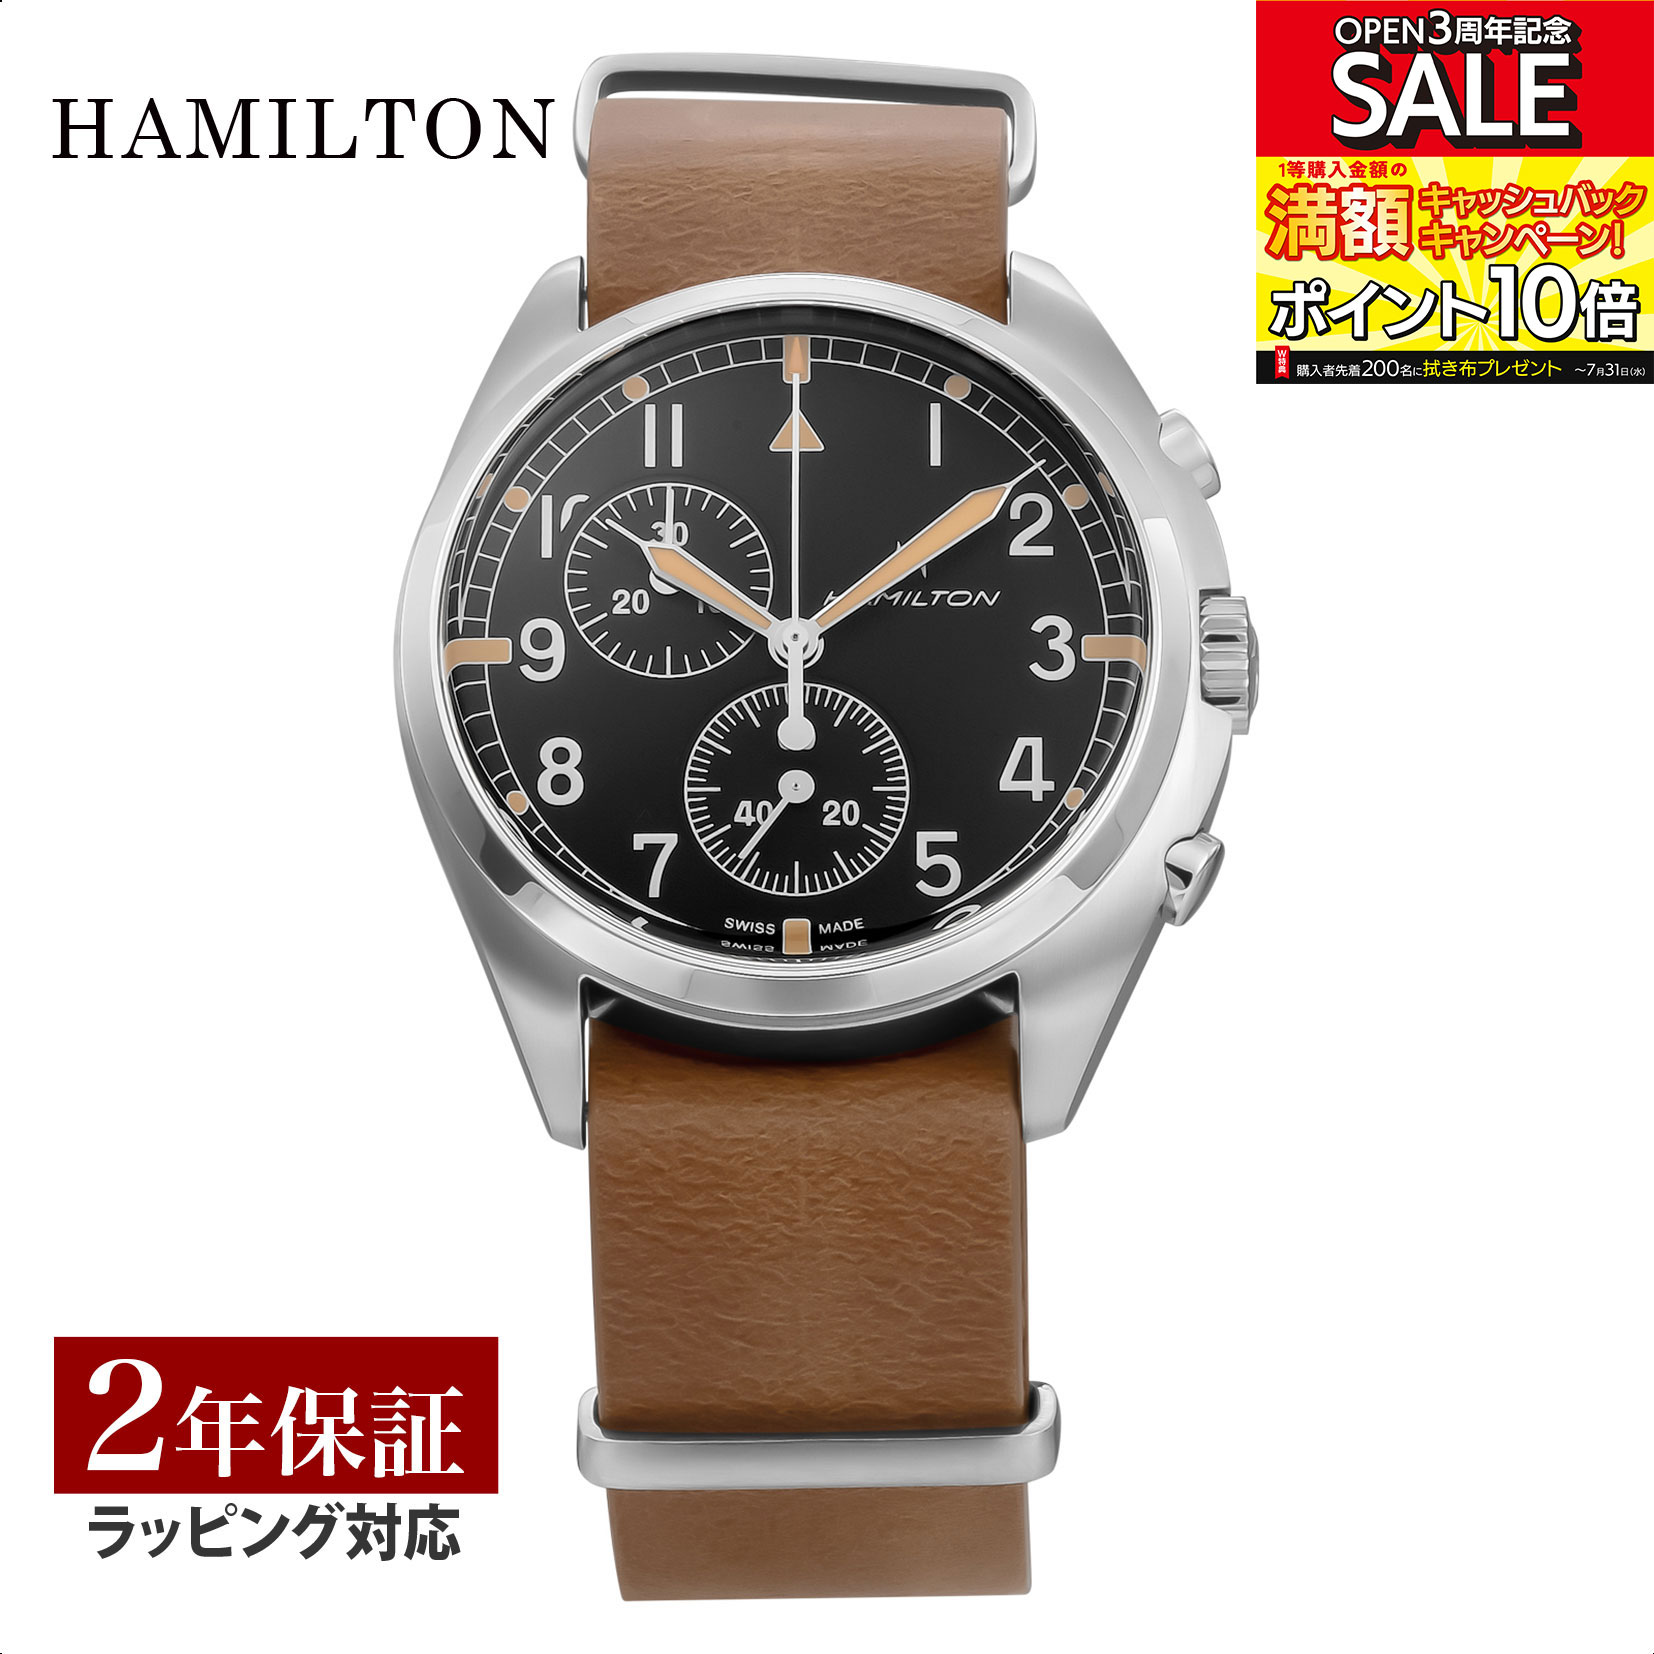 ハミルトン HAMILTON メンズ 時計 KHAKI AVIATION カーキアビエーション クォーツ ブラック H76522531 時計 腕時計 高級腕時計 ブランド